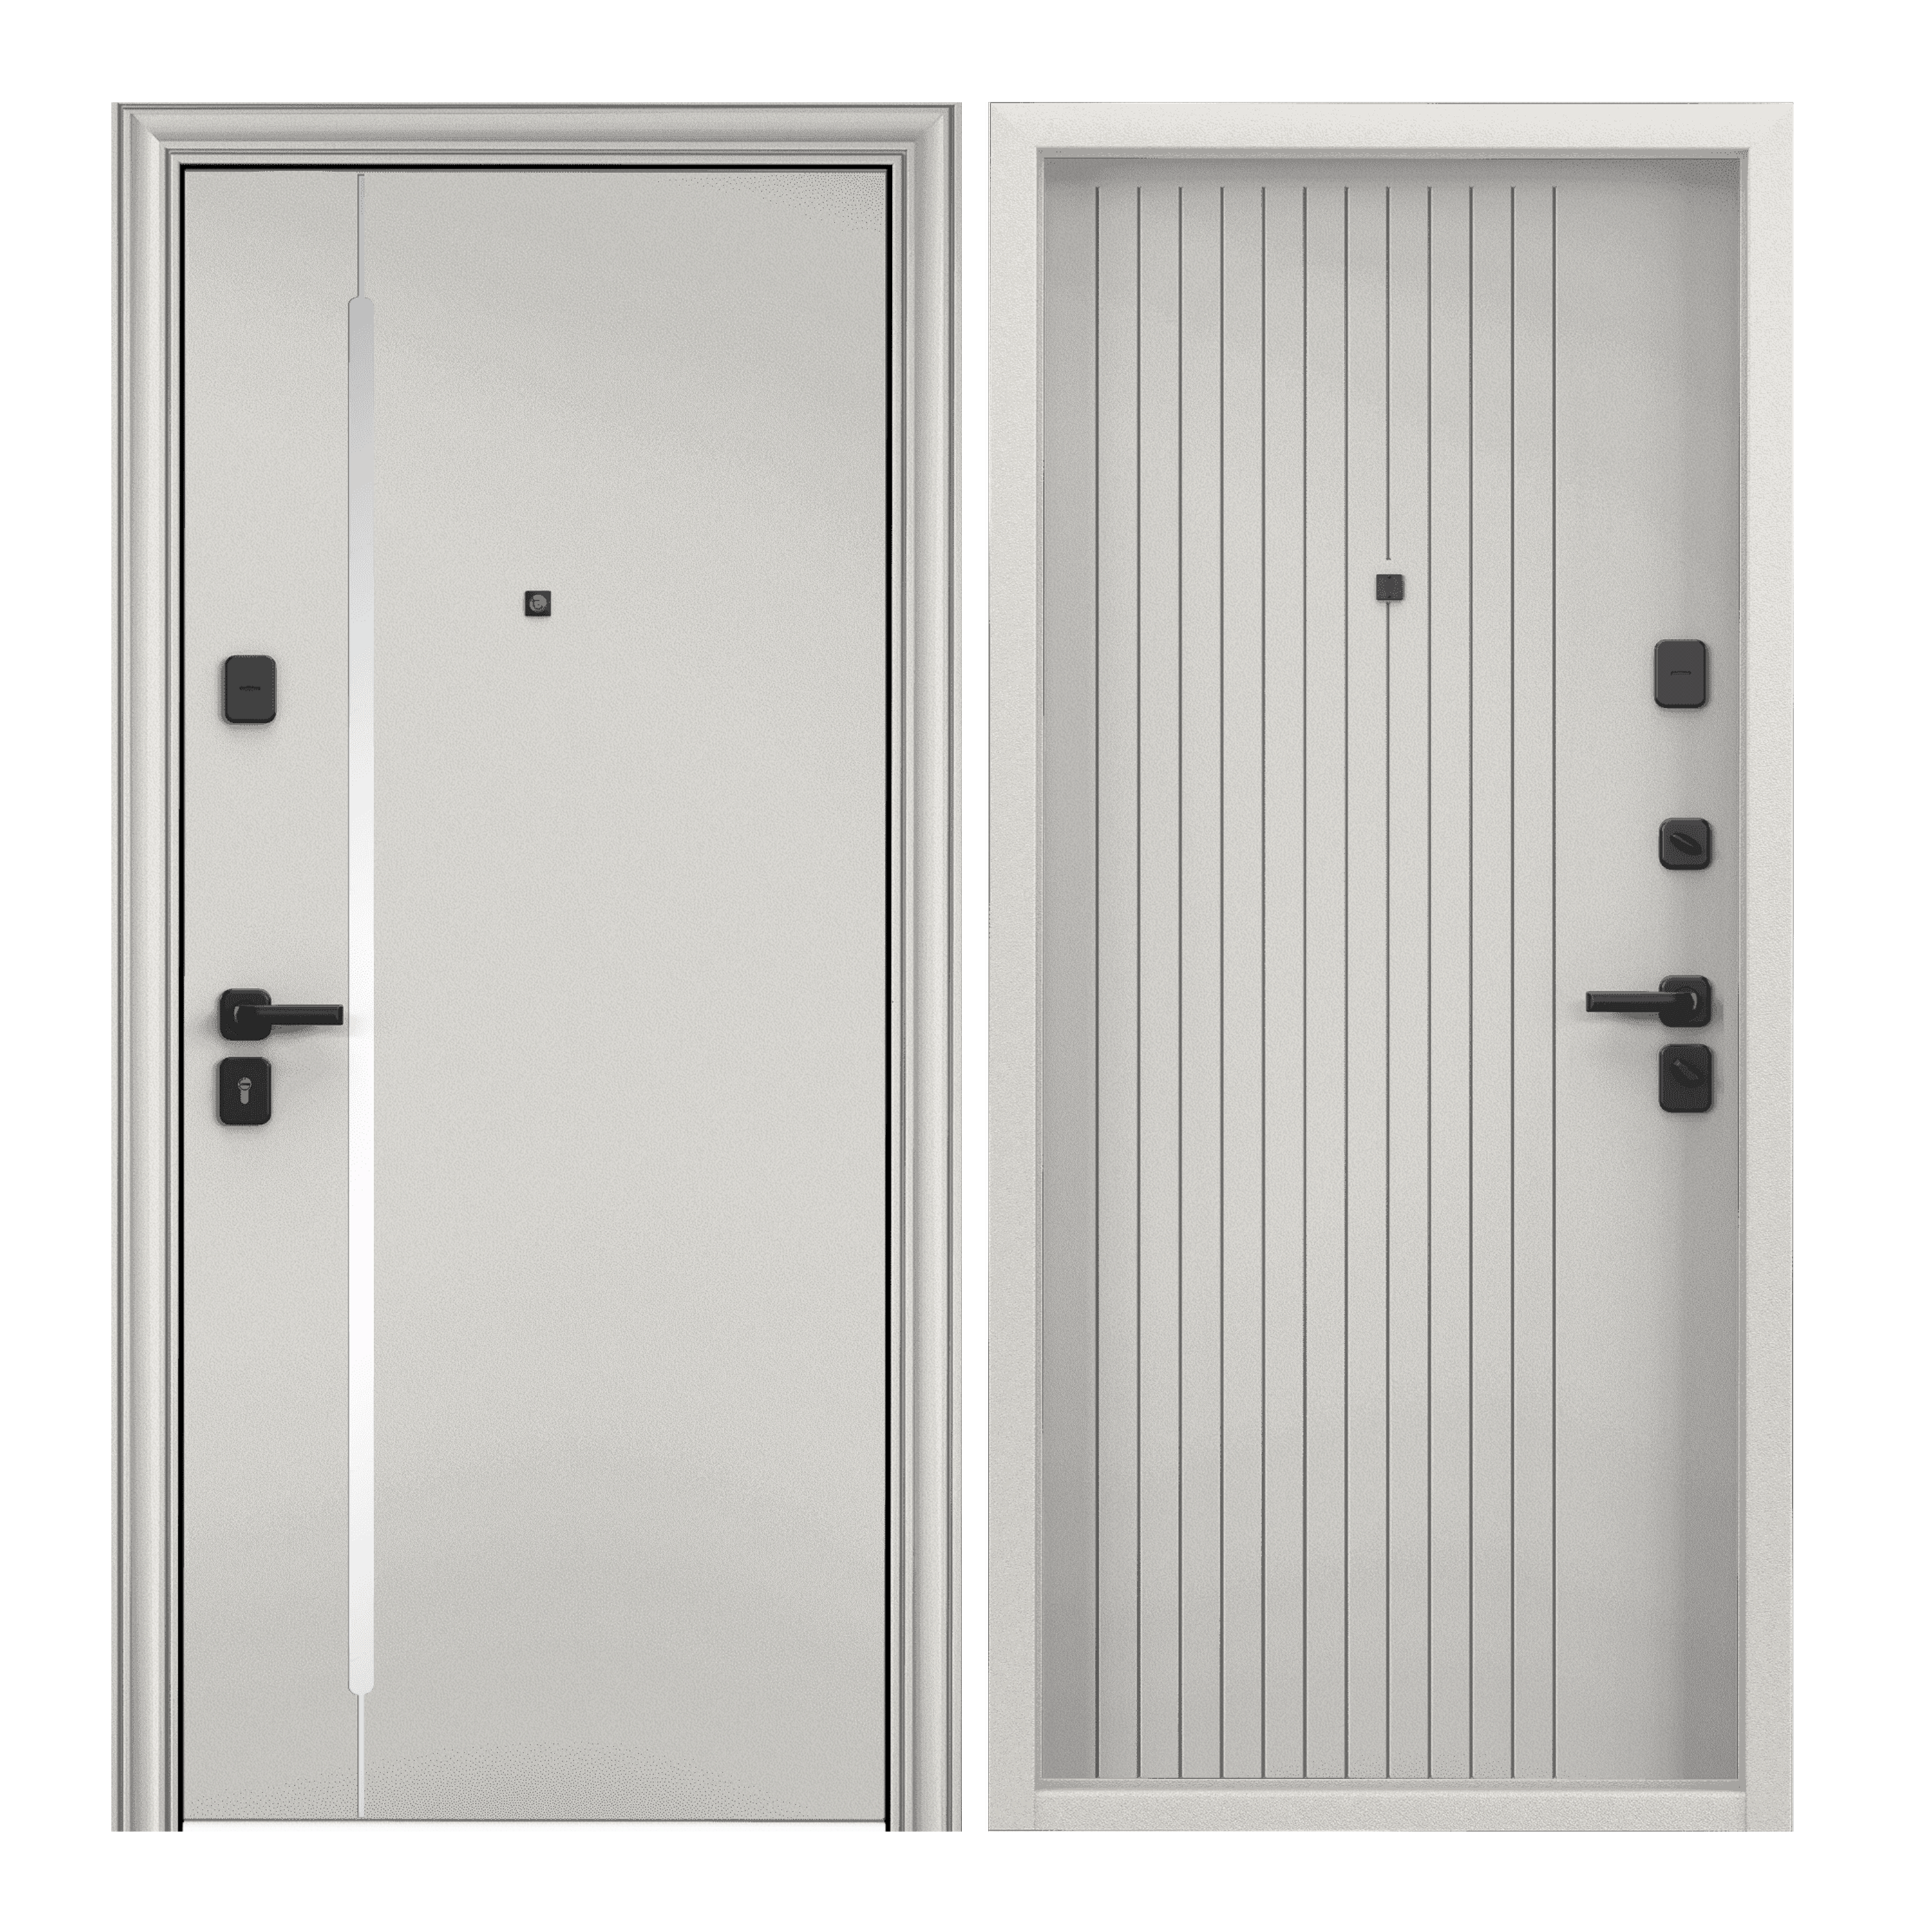 Дверь входная для квартиры Torex Super Omega PRO тепло-шумоизоляция антикоррозийная защита замки 4-ого класса защиты Колоре бьянко SP-18N/ПВХ Бьянко OP-L1